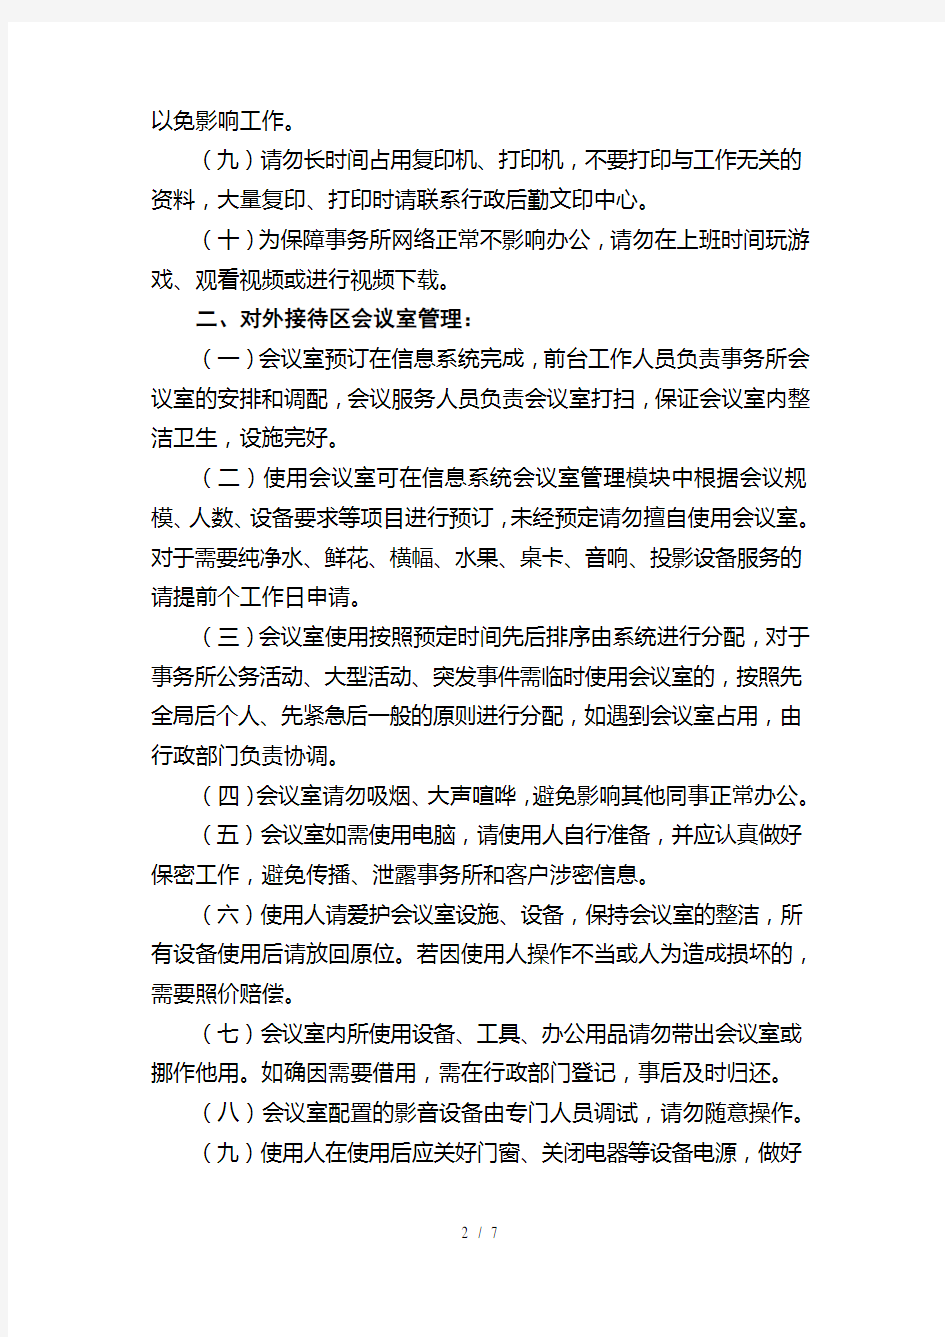 北京大成律师事务所办公区暂行管理规定(暂行)